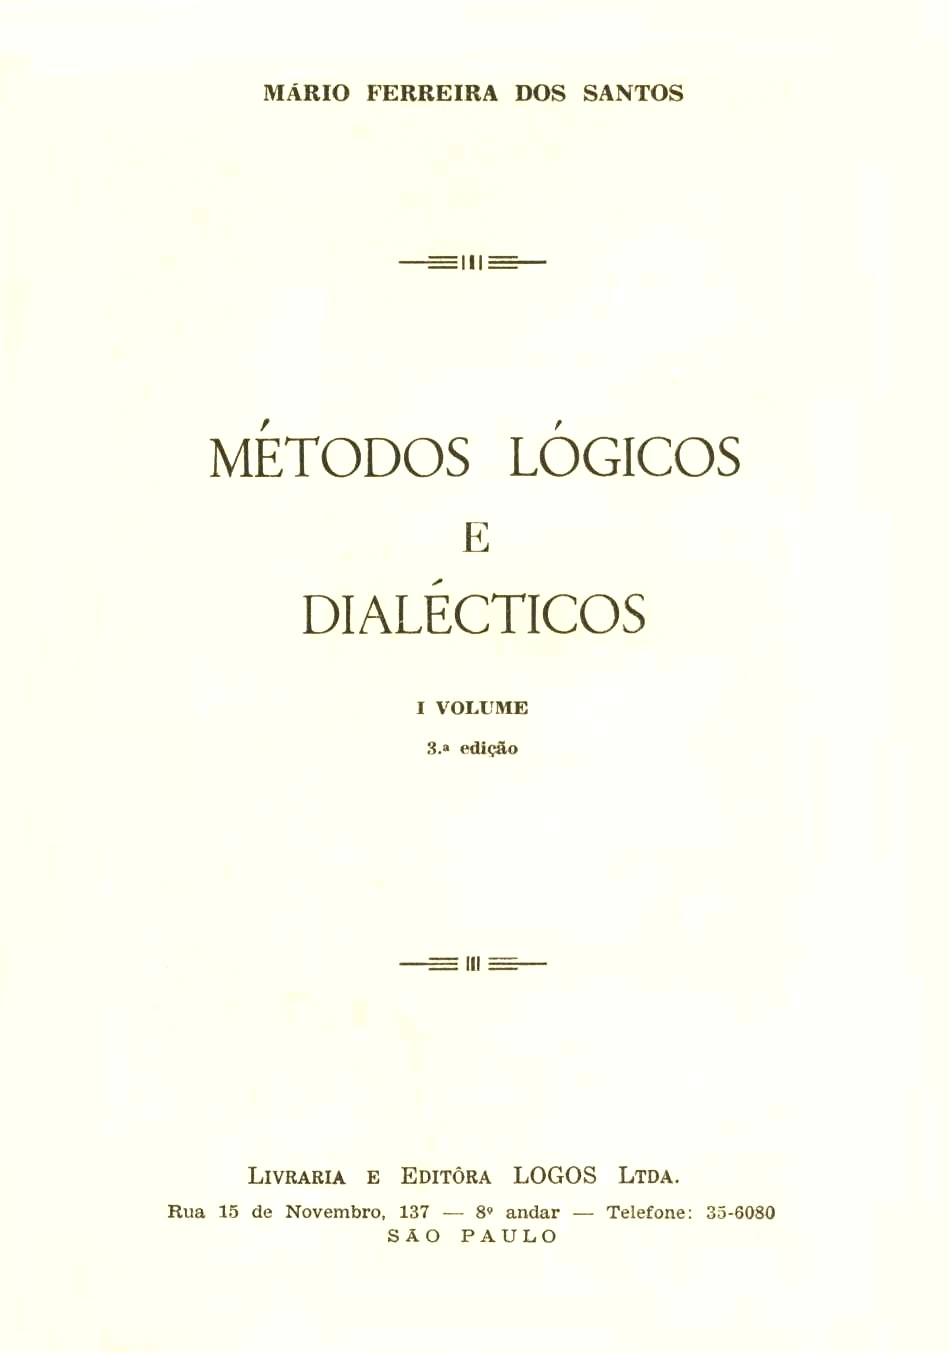 Métodos lógicos e dialécticos